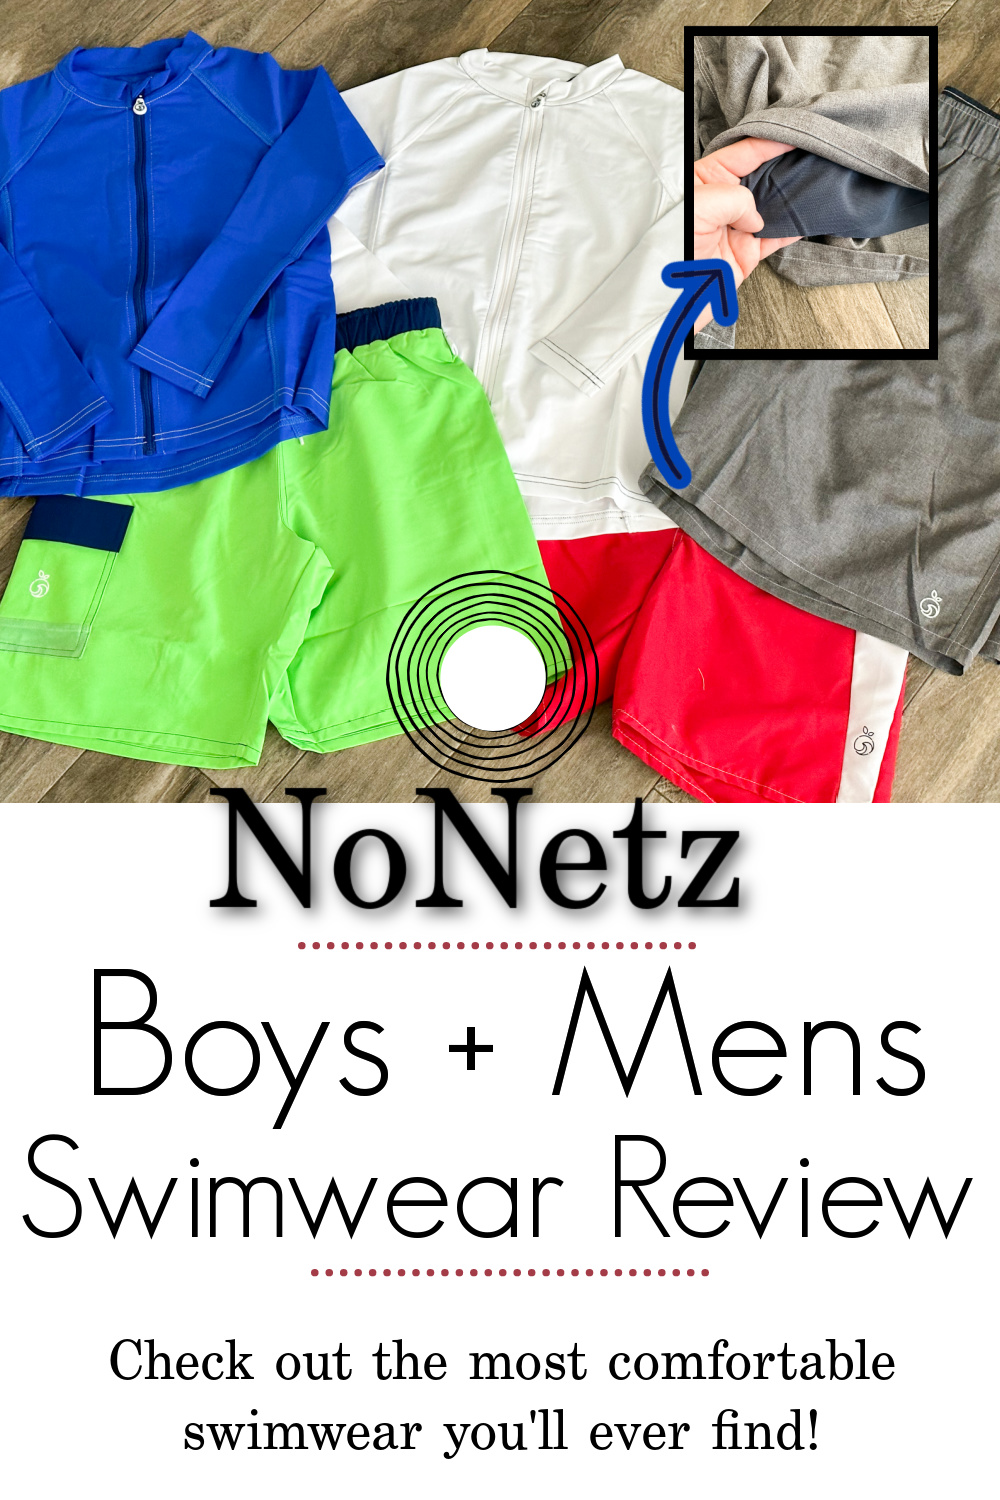 NoNetz Swim Trunks Review - The Most Comfortable Swim Trunks For Boys & Men